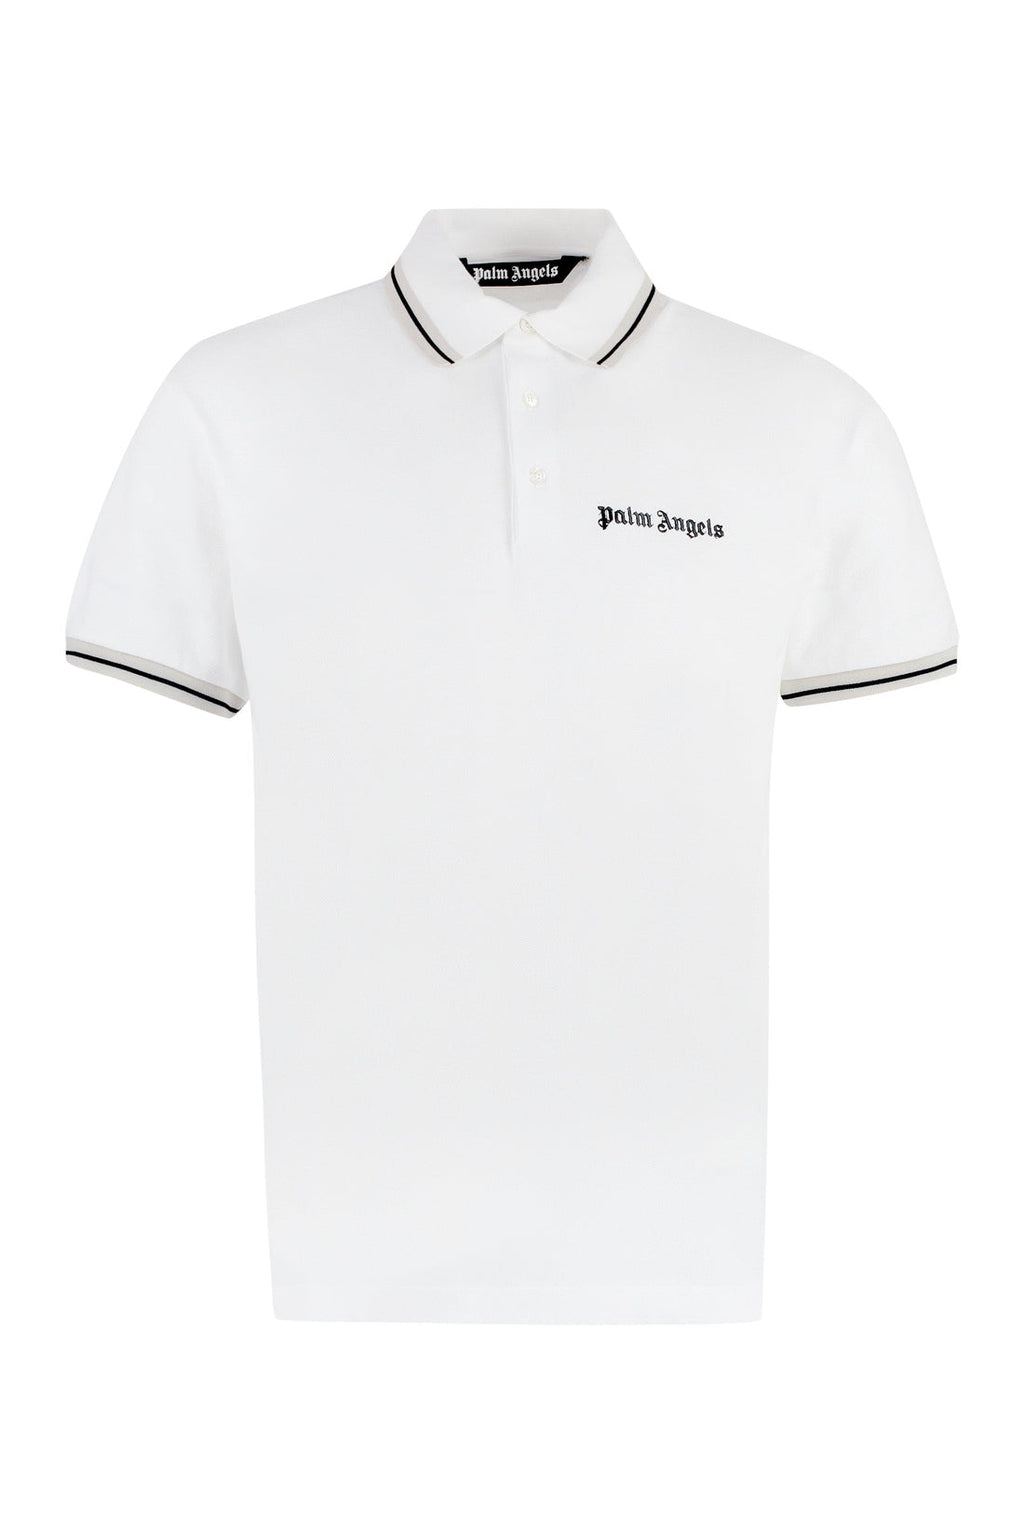 Palm Angels-OUTLET-SALE-Cotton polo shirt-ARCHIVIST